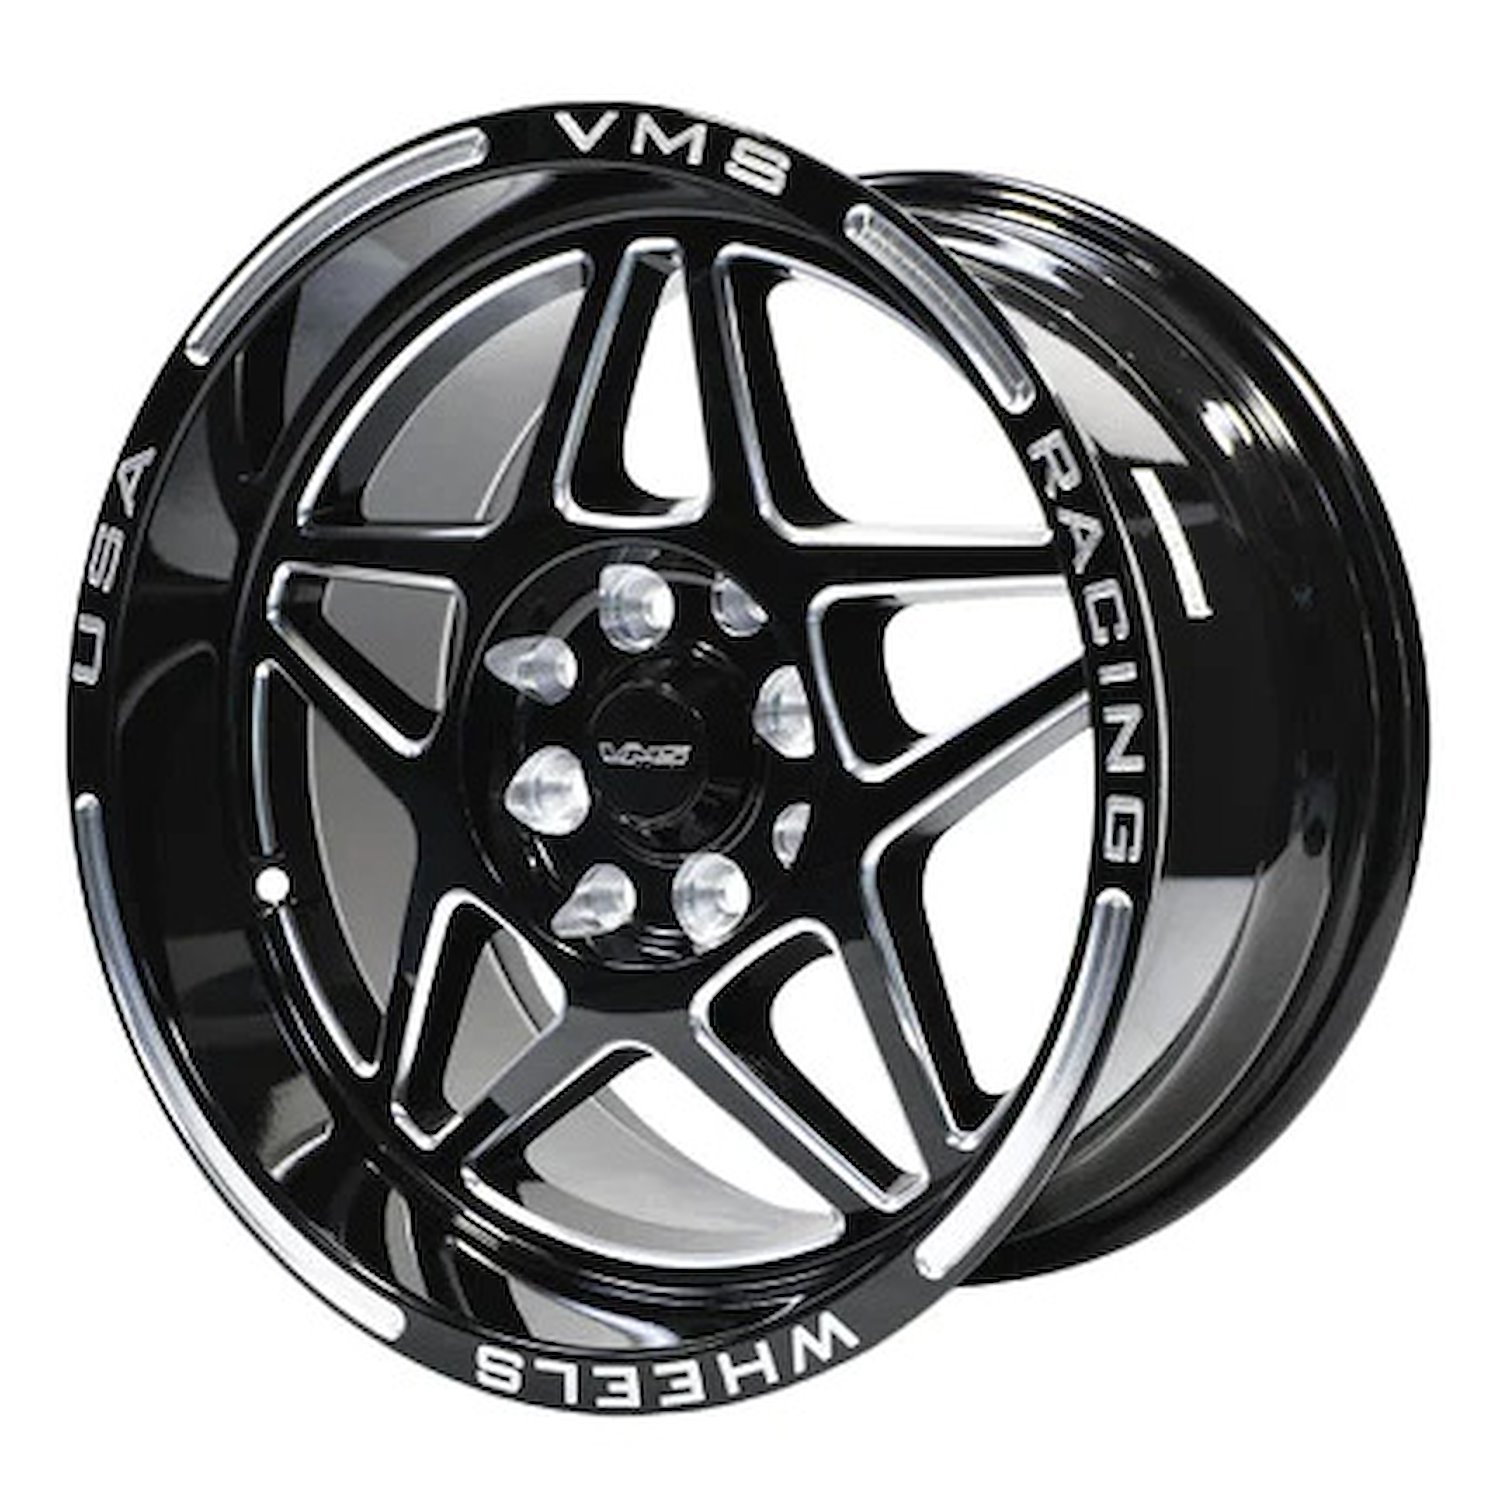 VWDA002 Delta Wheel, Size: 15" x 8", Bolt Pattern: 5 x 100 mm & 5 x 4 1/2" (114.3 mm) [Finish: Gloss Black Milled]